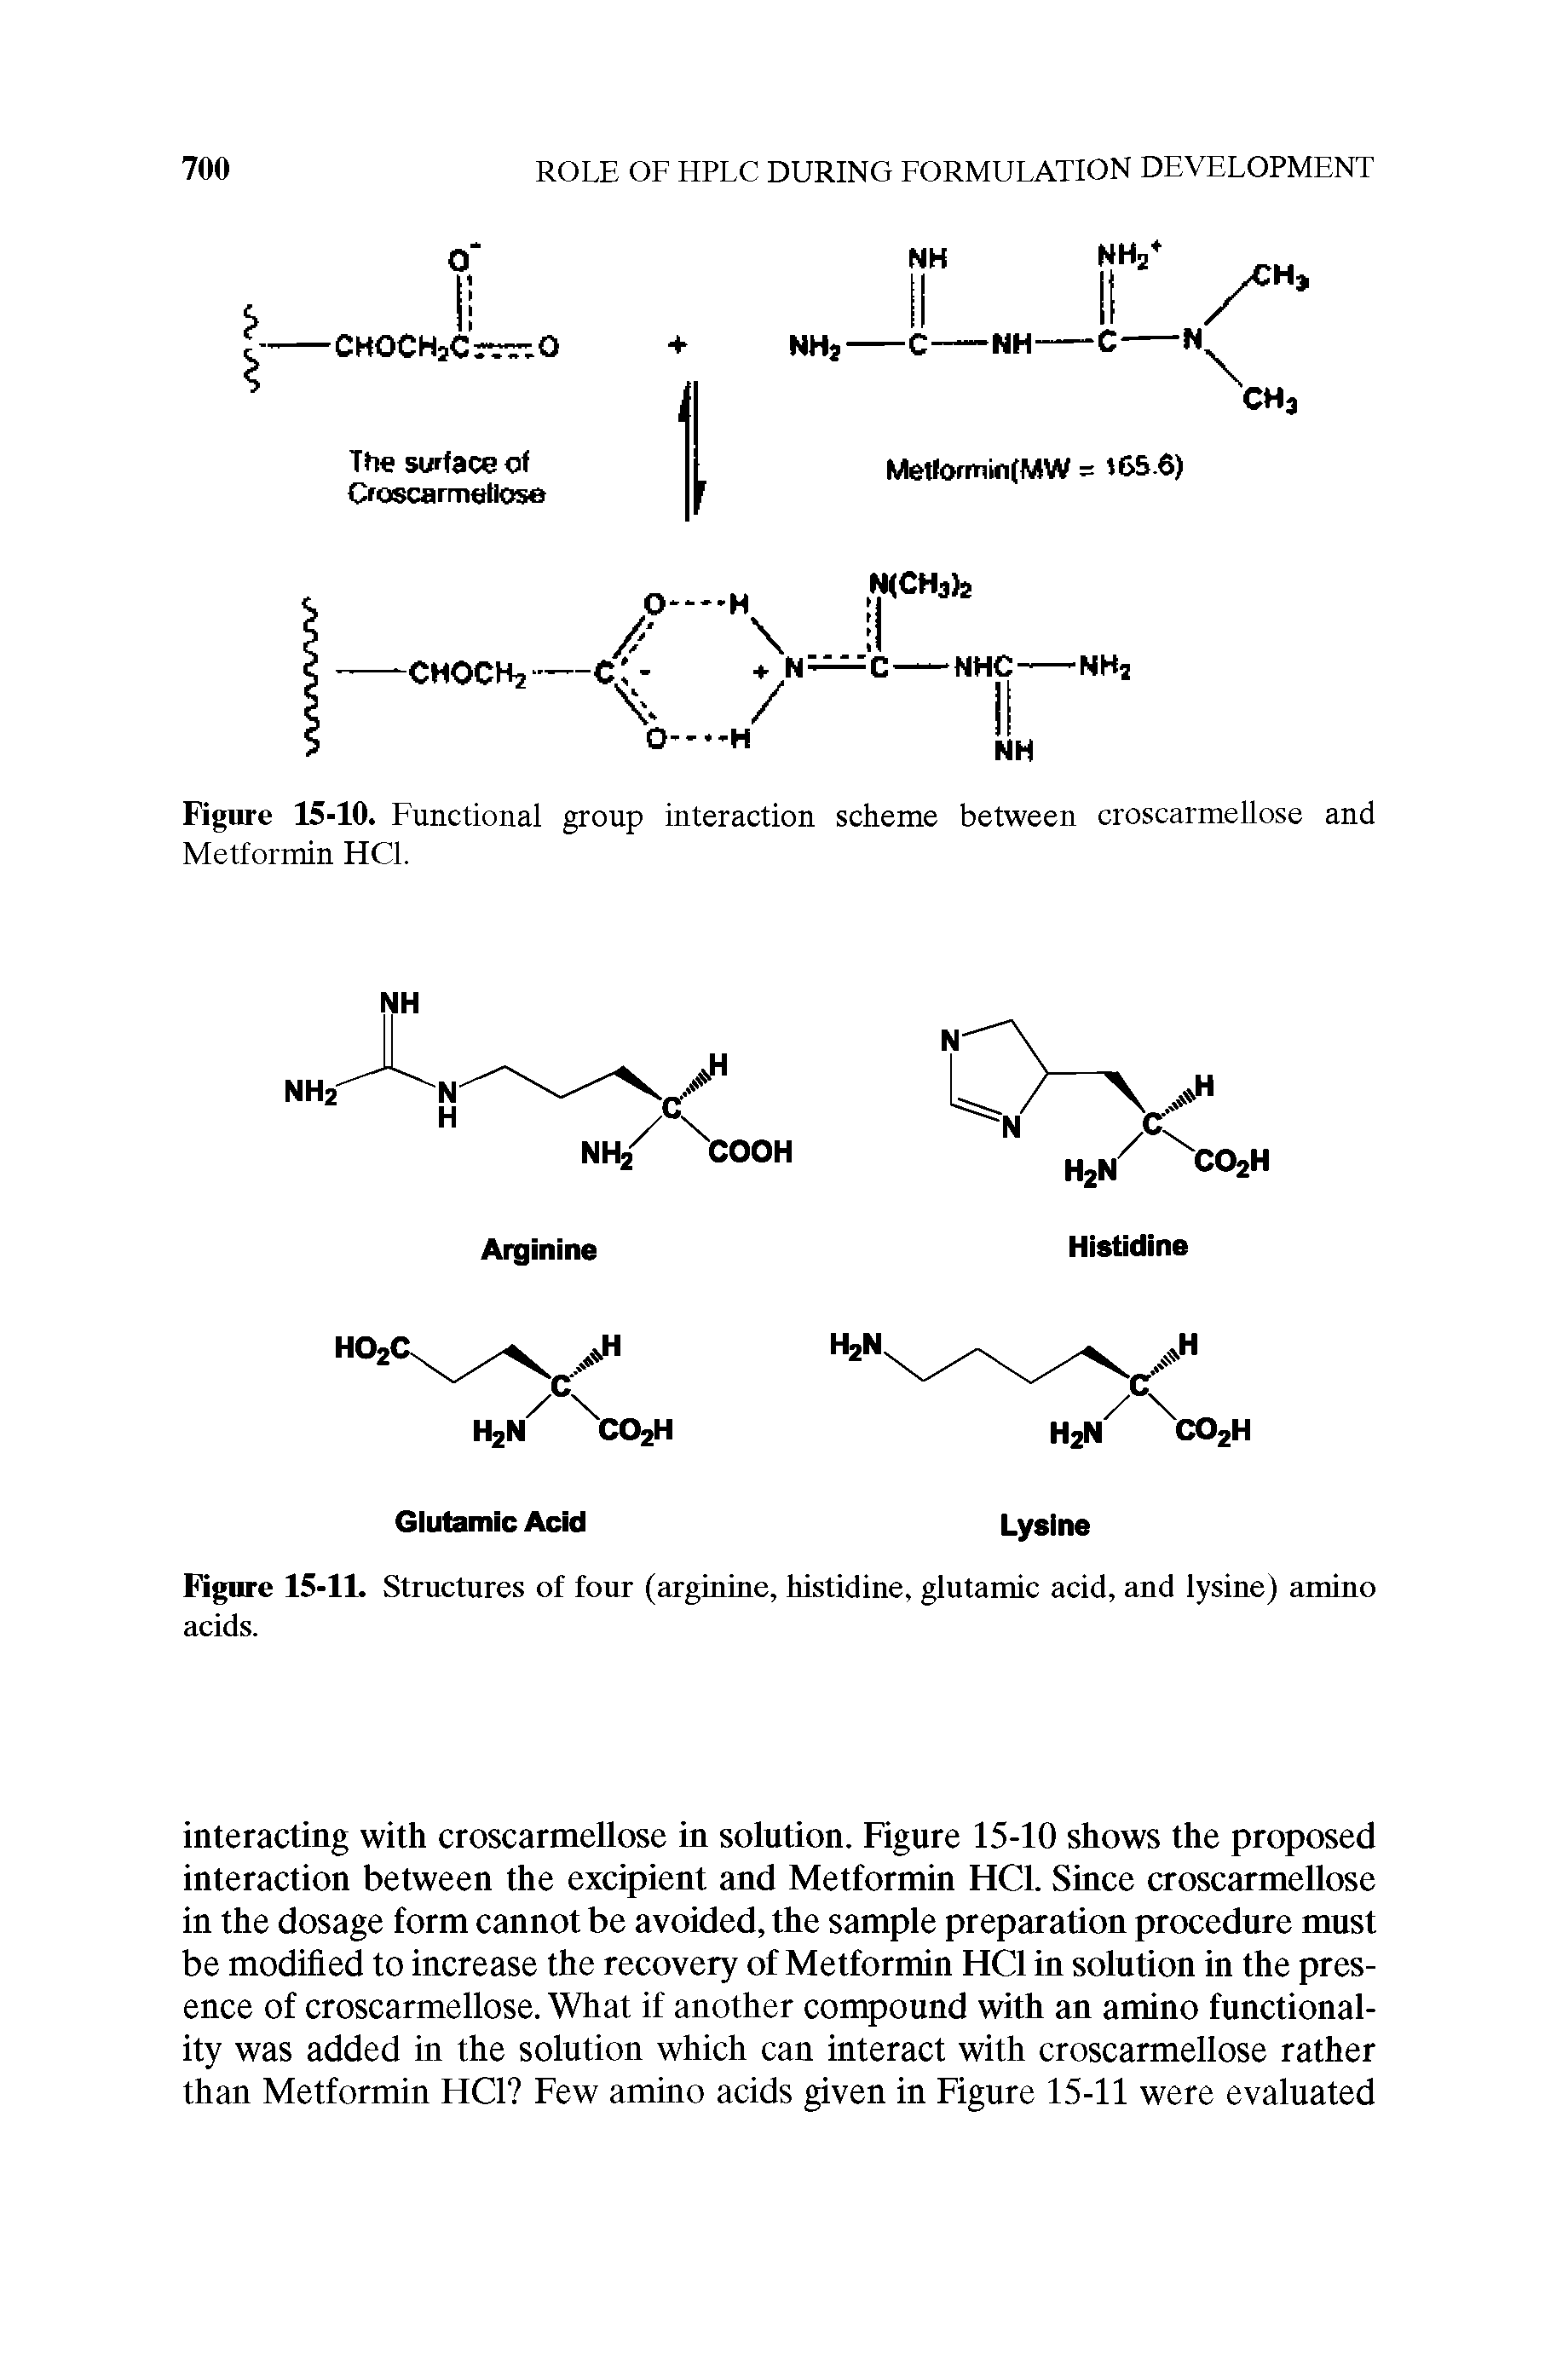 Figure 15-11. Structures of four (arginine, histidine, glutamic acid, and lysine) amino acids.